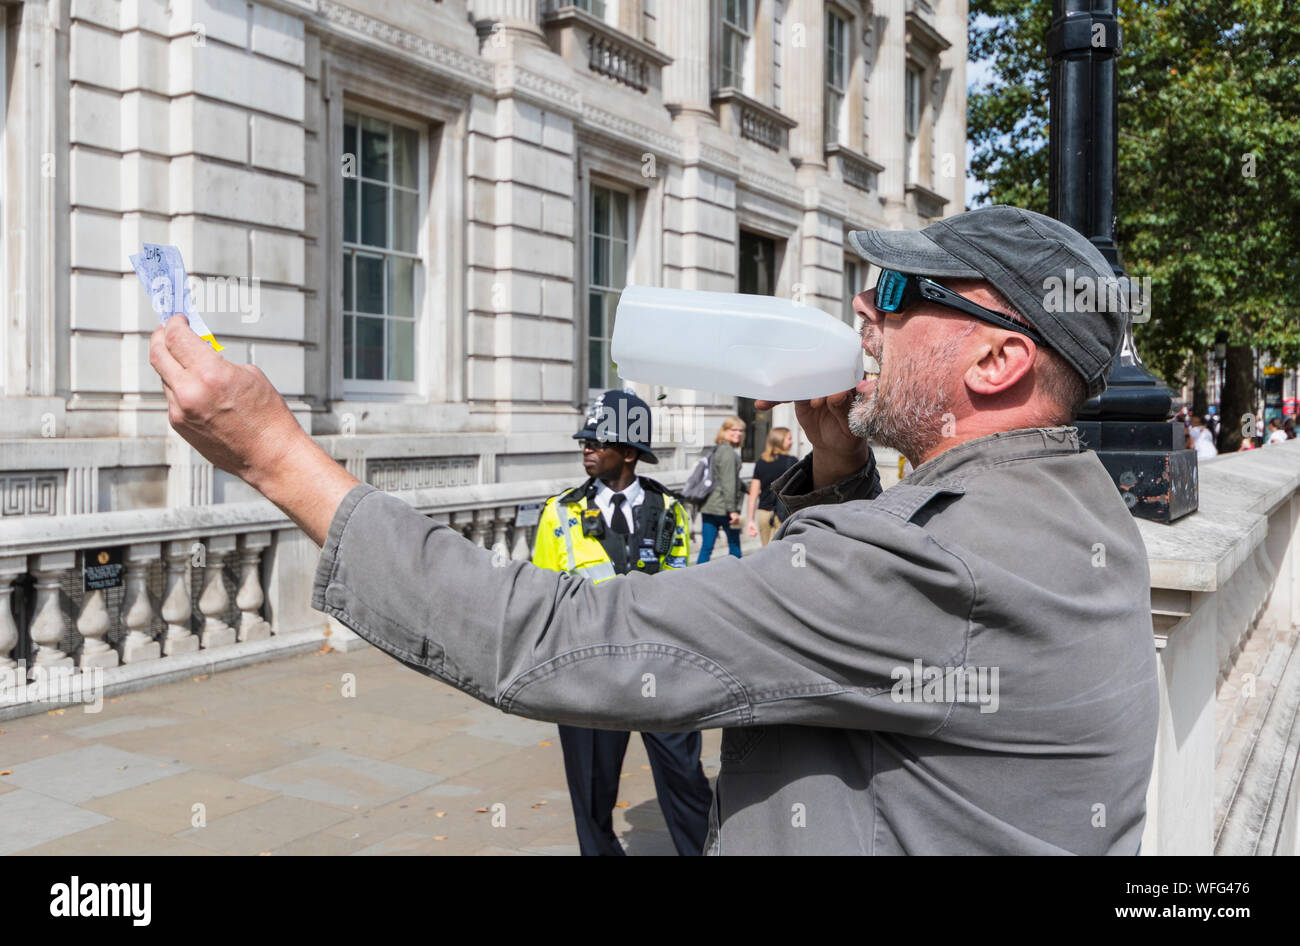 Manifestante solitario fuera de la Oficina del Gabinete en Whitehall en Londres gritando por megáfono casero a PM, con la policía mirando. La libertad de expresión en el Reino Unido. Foto de stock